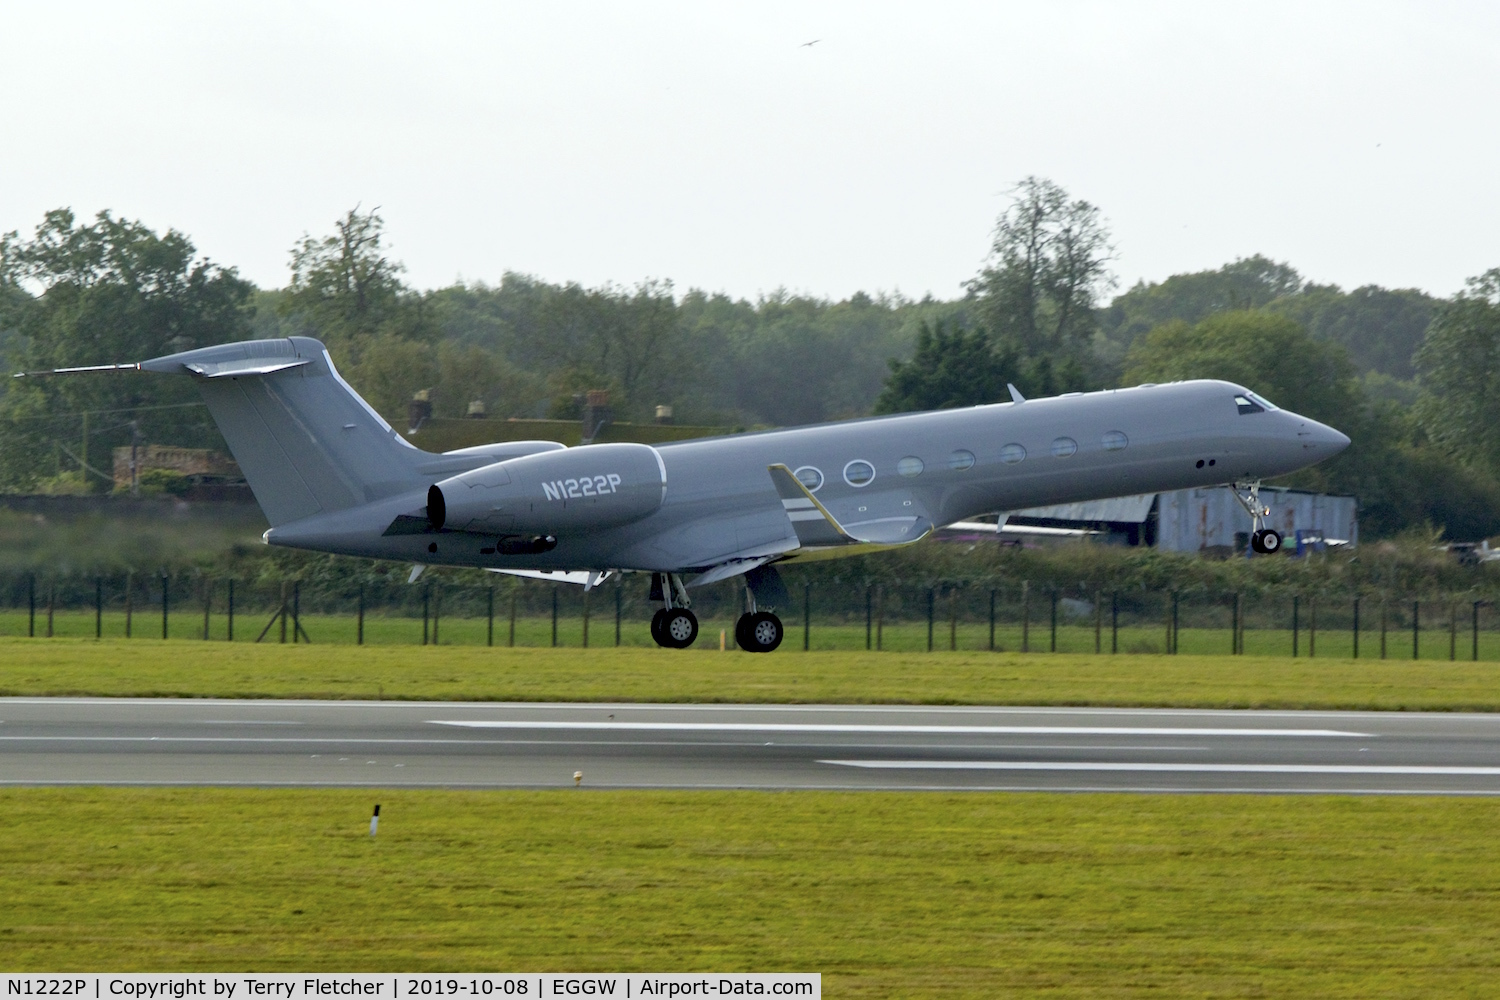 N1222P, 2000 Gulfstream Aerospace G-V C/N 606, At Luton